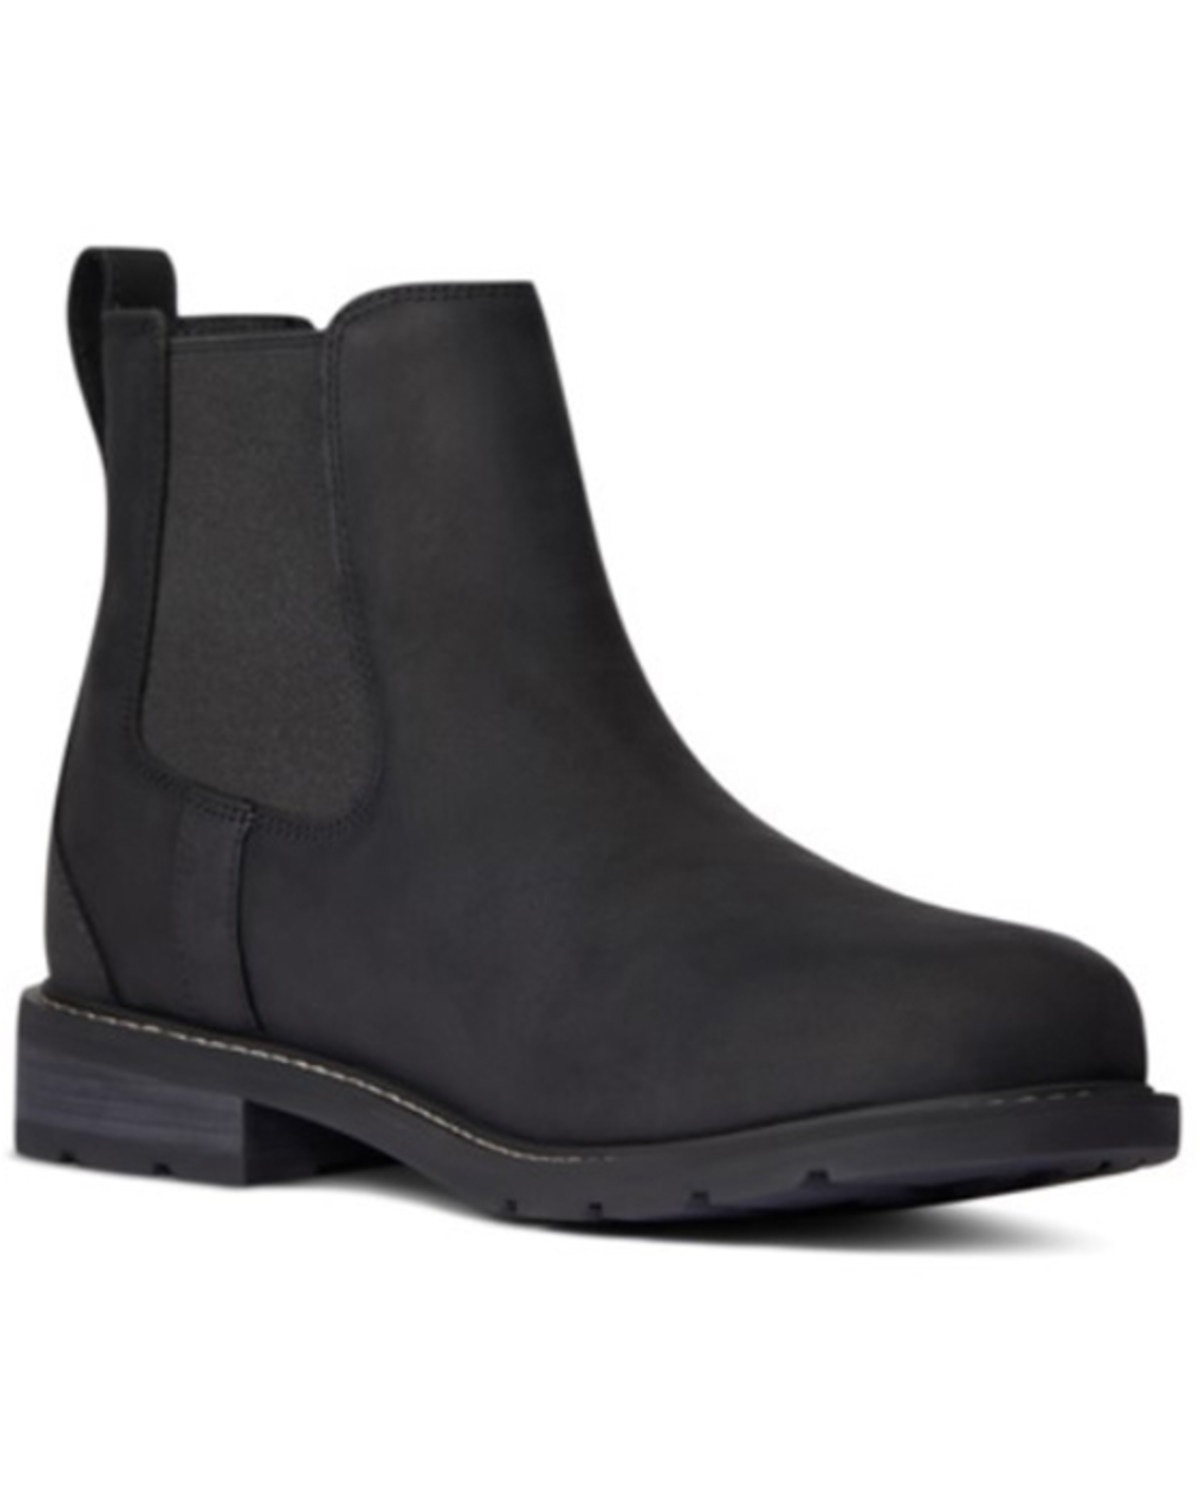 Ariat Men's Wexford Waterproof Chelsea Boots - Medium Toe